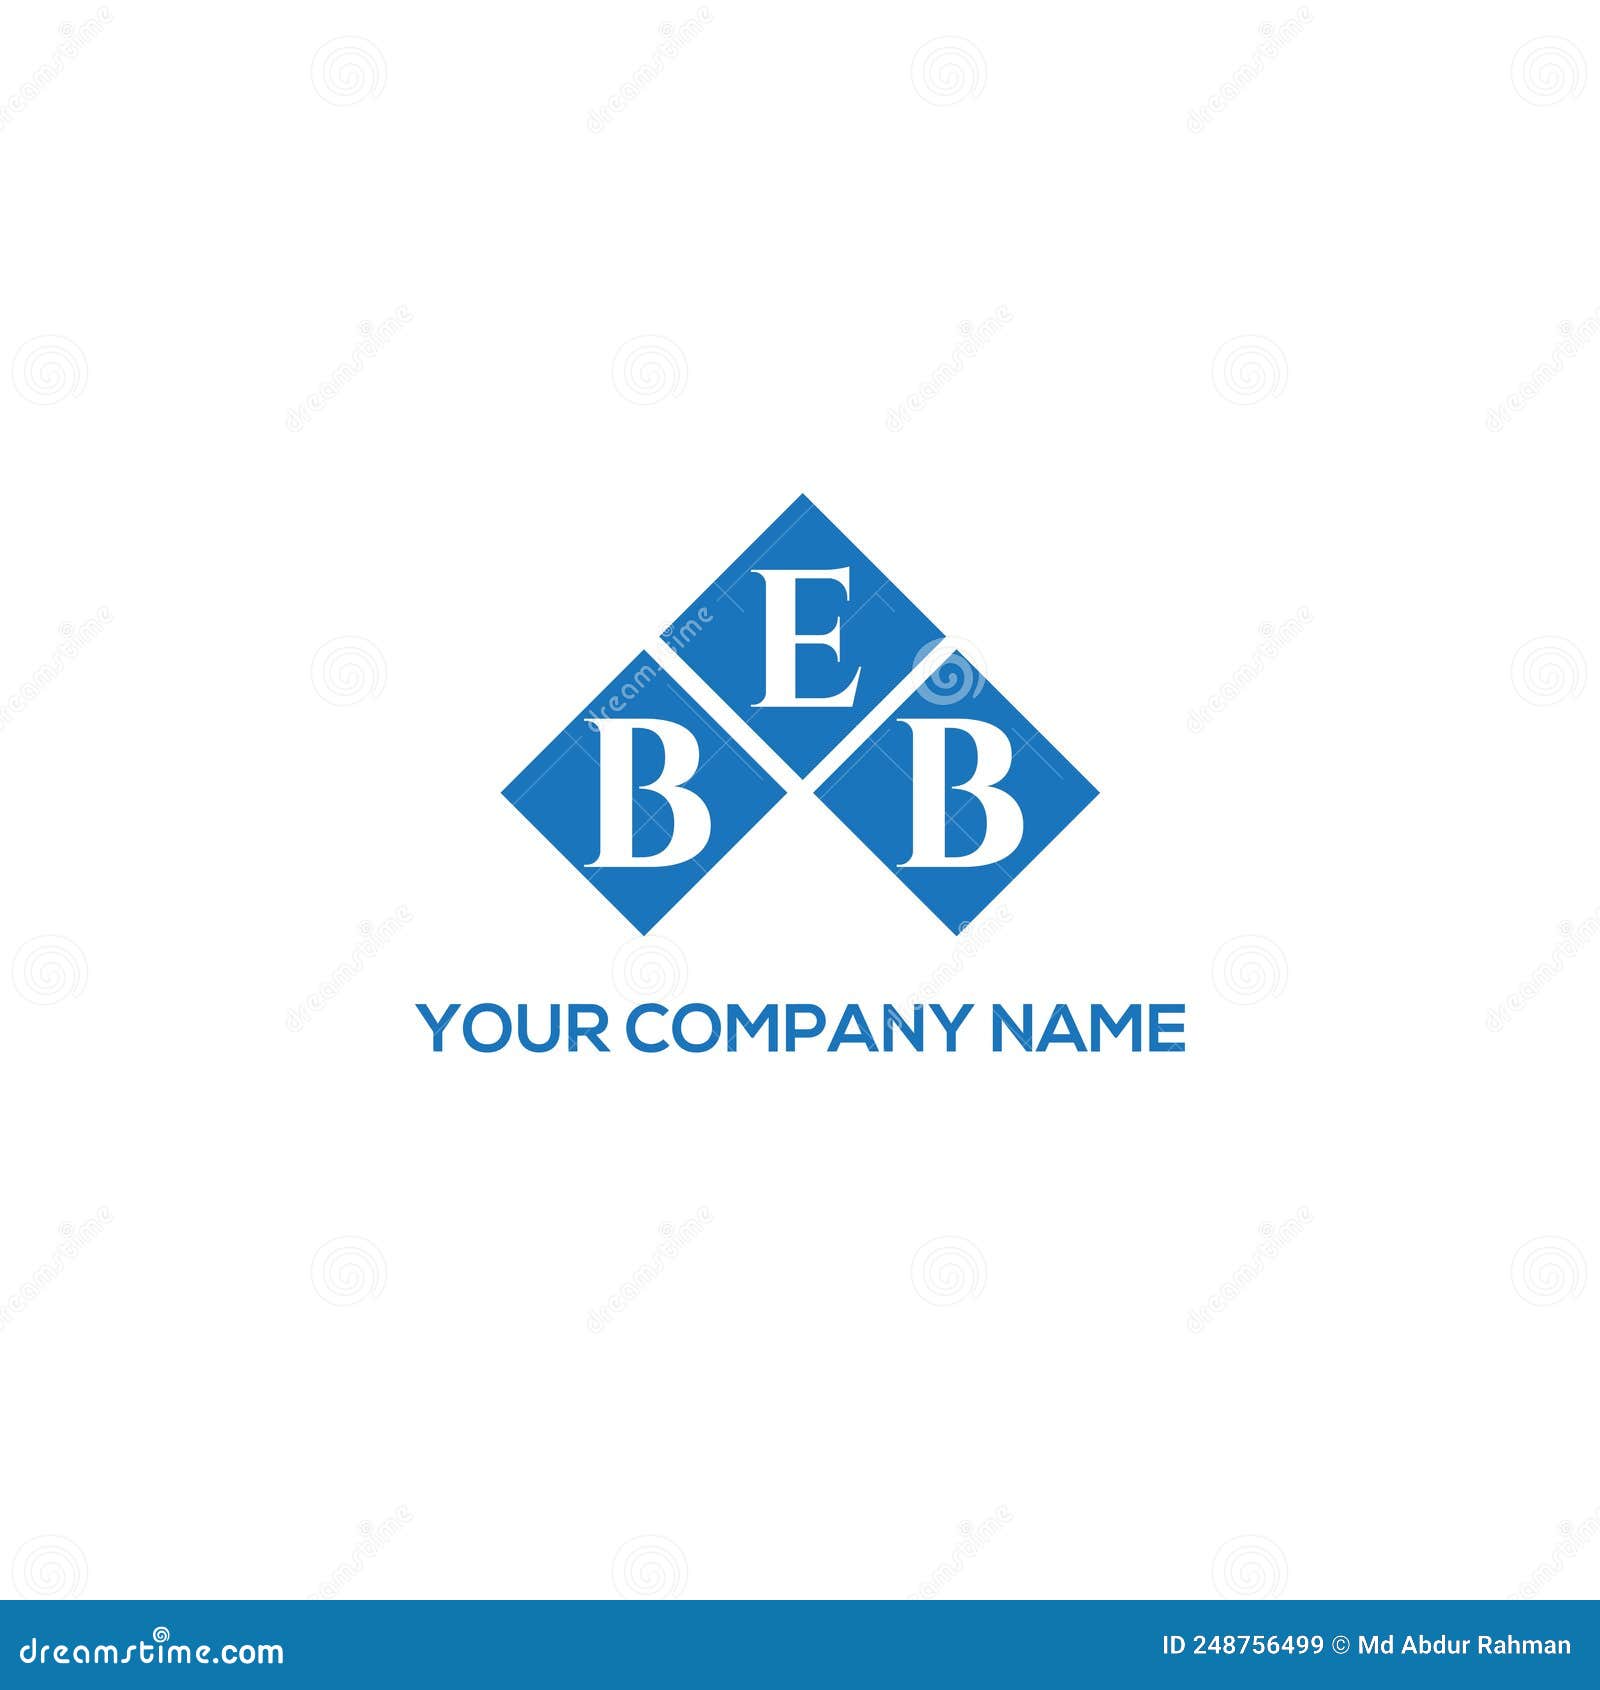 beb letter logo  on black background. beb creative initials letter logo concept. beb letter .beb letter logo  on